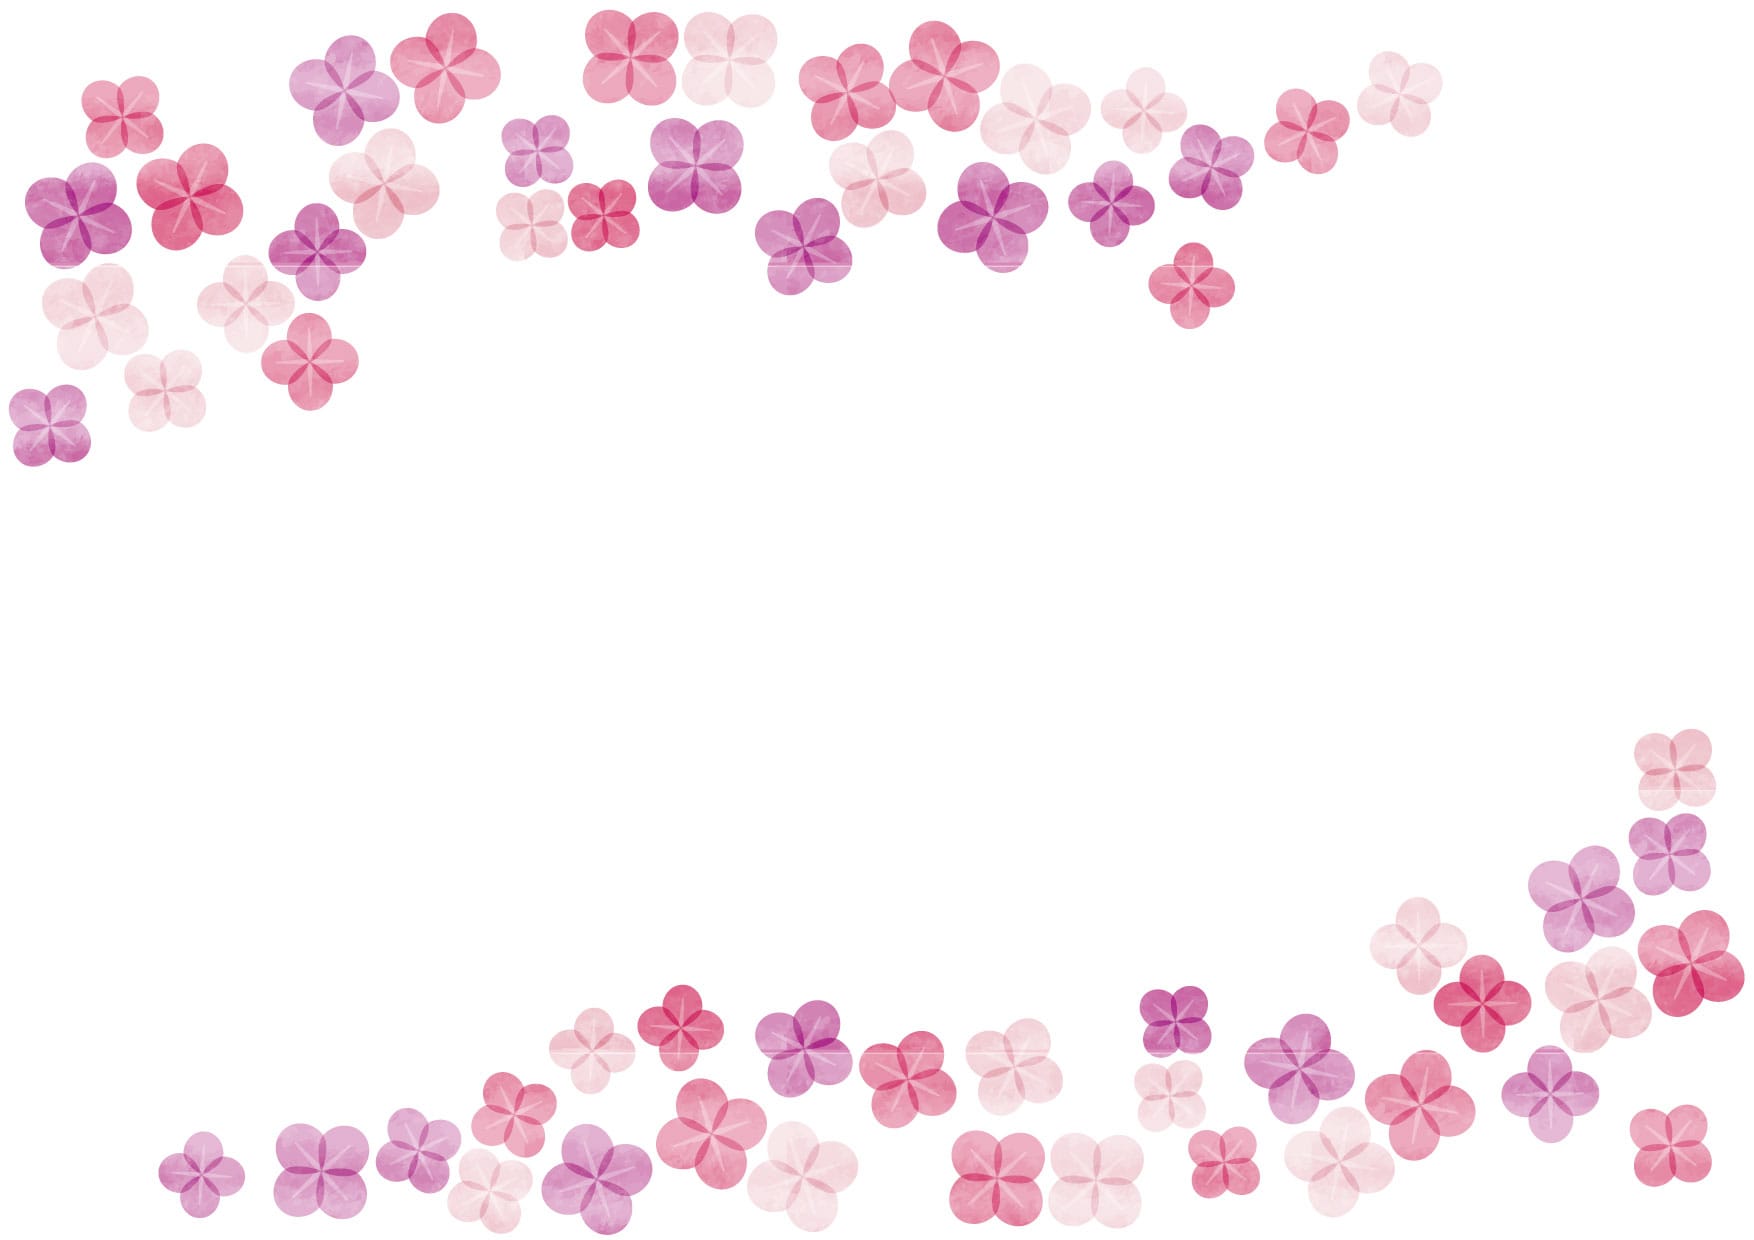 可愛いイラスト無料 あじさい ピンク色 水彩 背景 Free Illustration Hydrangea Pink Watercolor Background 公式 イラスト素材サイト イラストダウンロード